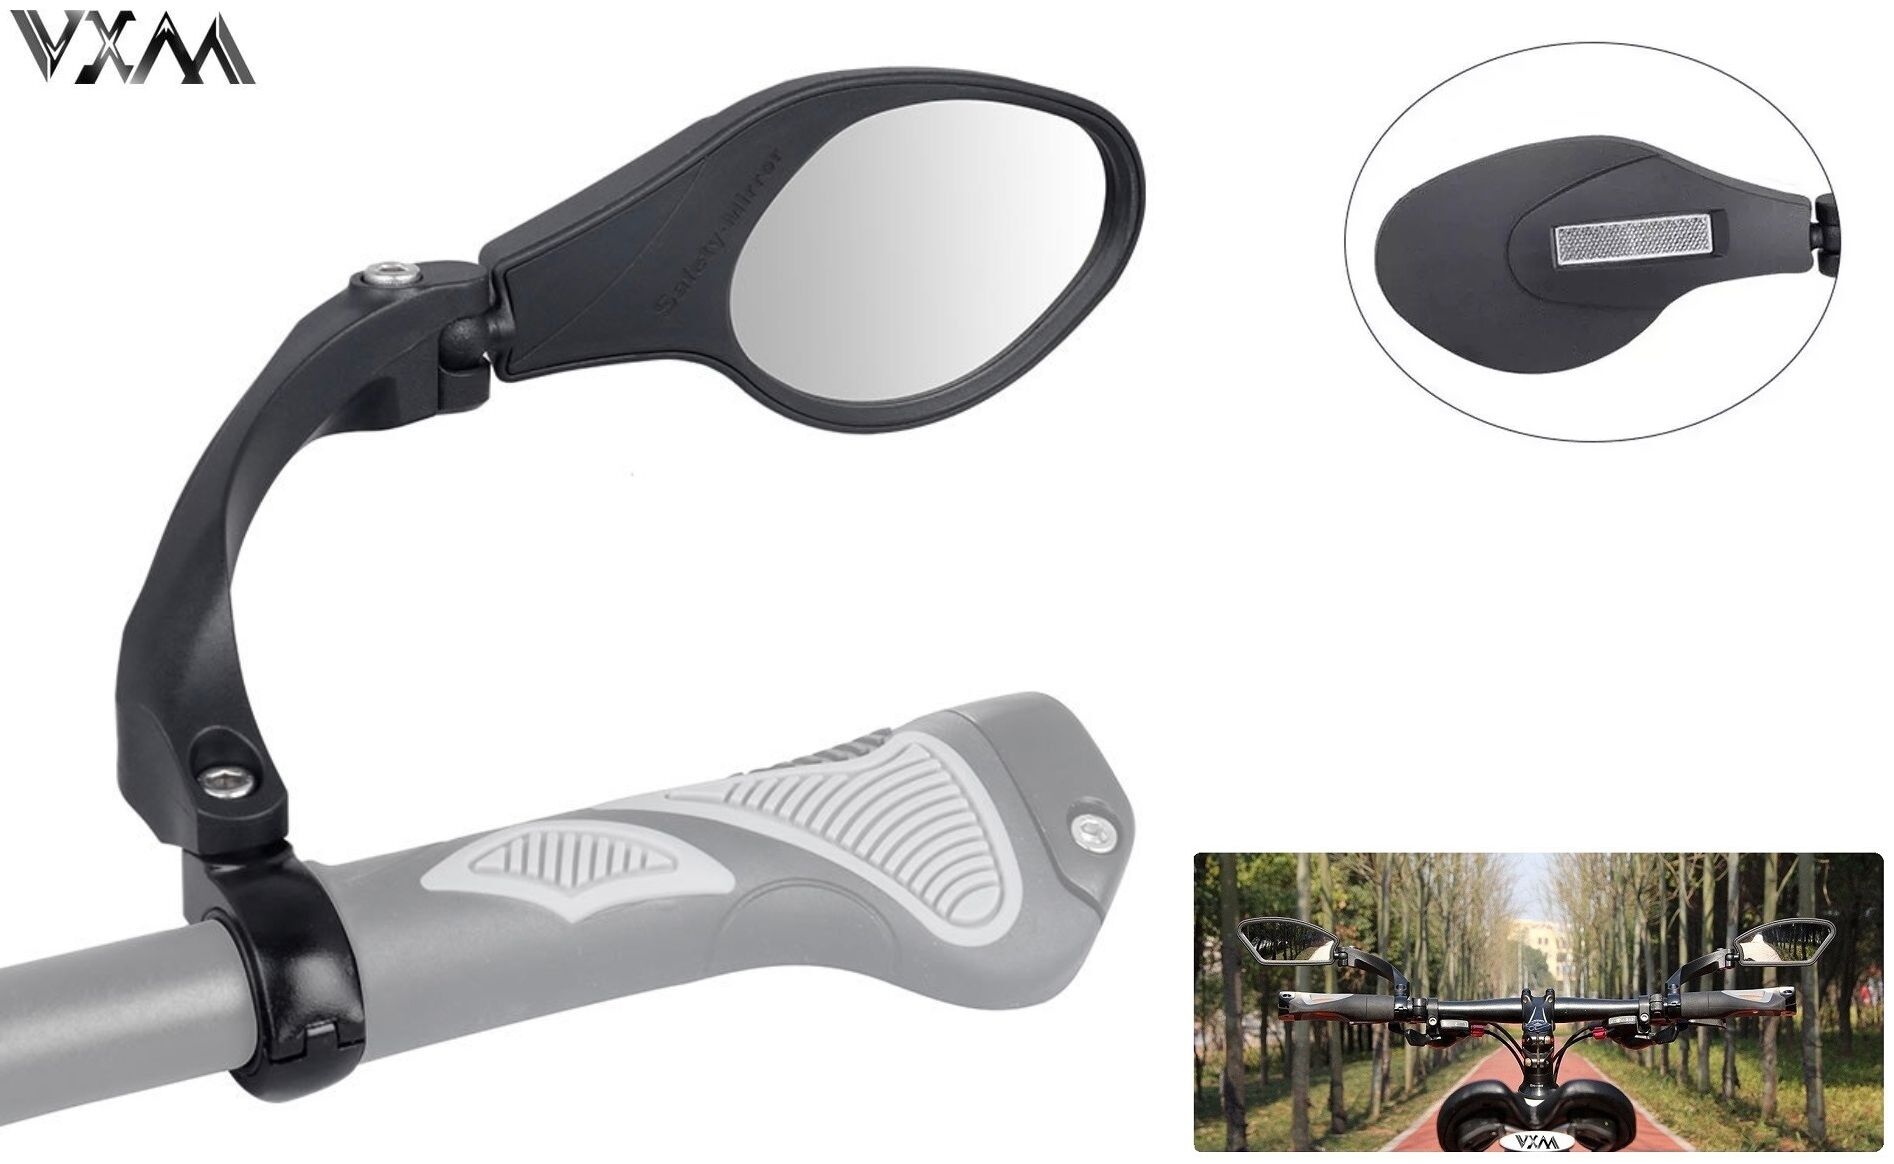 Фото выбрать и купить зеркало заднего вида vxm tuning, (правое) складное, вращающееся 360°, алюминиевое крепление на руль, корпус - нейлон, с отражателем, hf-mr081r (ут00021827) для велосипедов со склада в СПб - большой выбор для взрослого, зеркало заднего вида vxm tuning, (правое) складное, вращающееся 360°, алюминиевое крепление на руль, корпус - нейлон, с отражателем, hf-mr081r (ут00021827) для велосипедов в наличии - интернет-магазин Мастерская Тимура